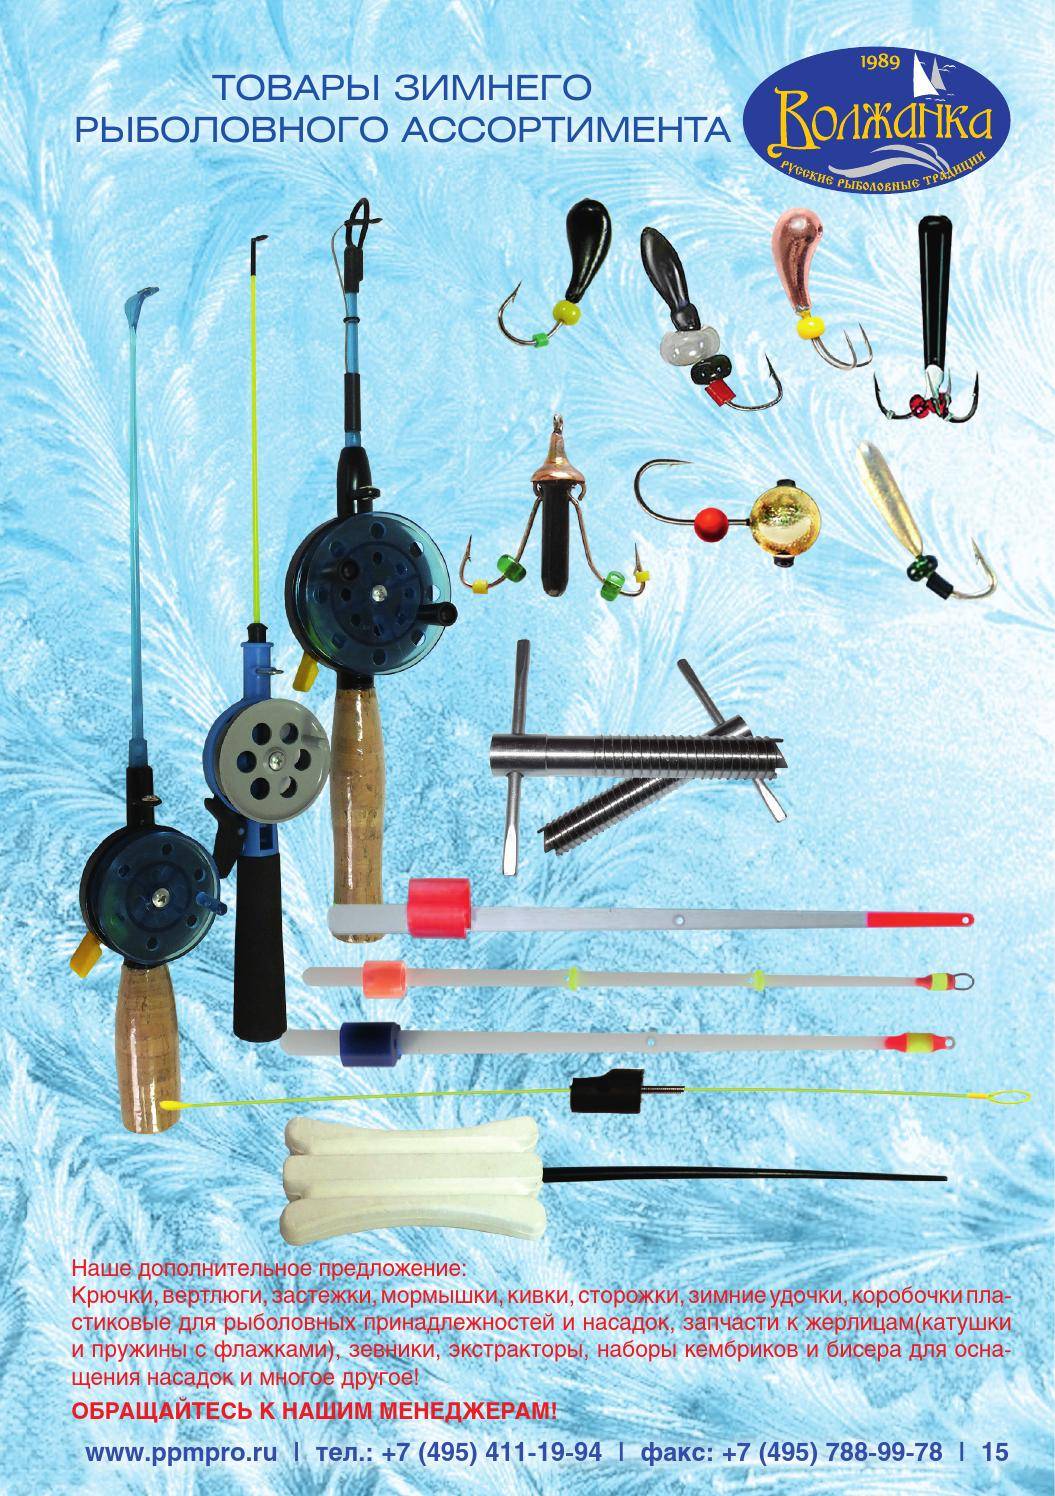 Необходимые предметы для зимний рыбалки | обзор жизни|